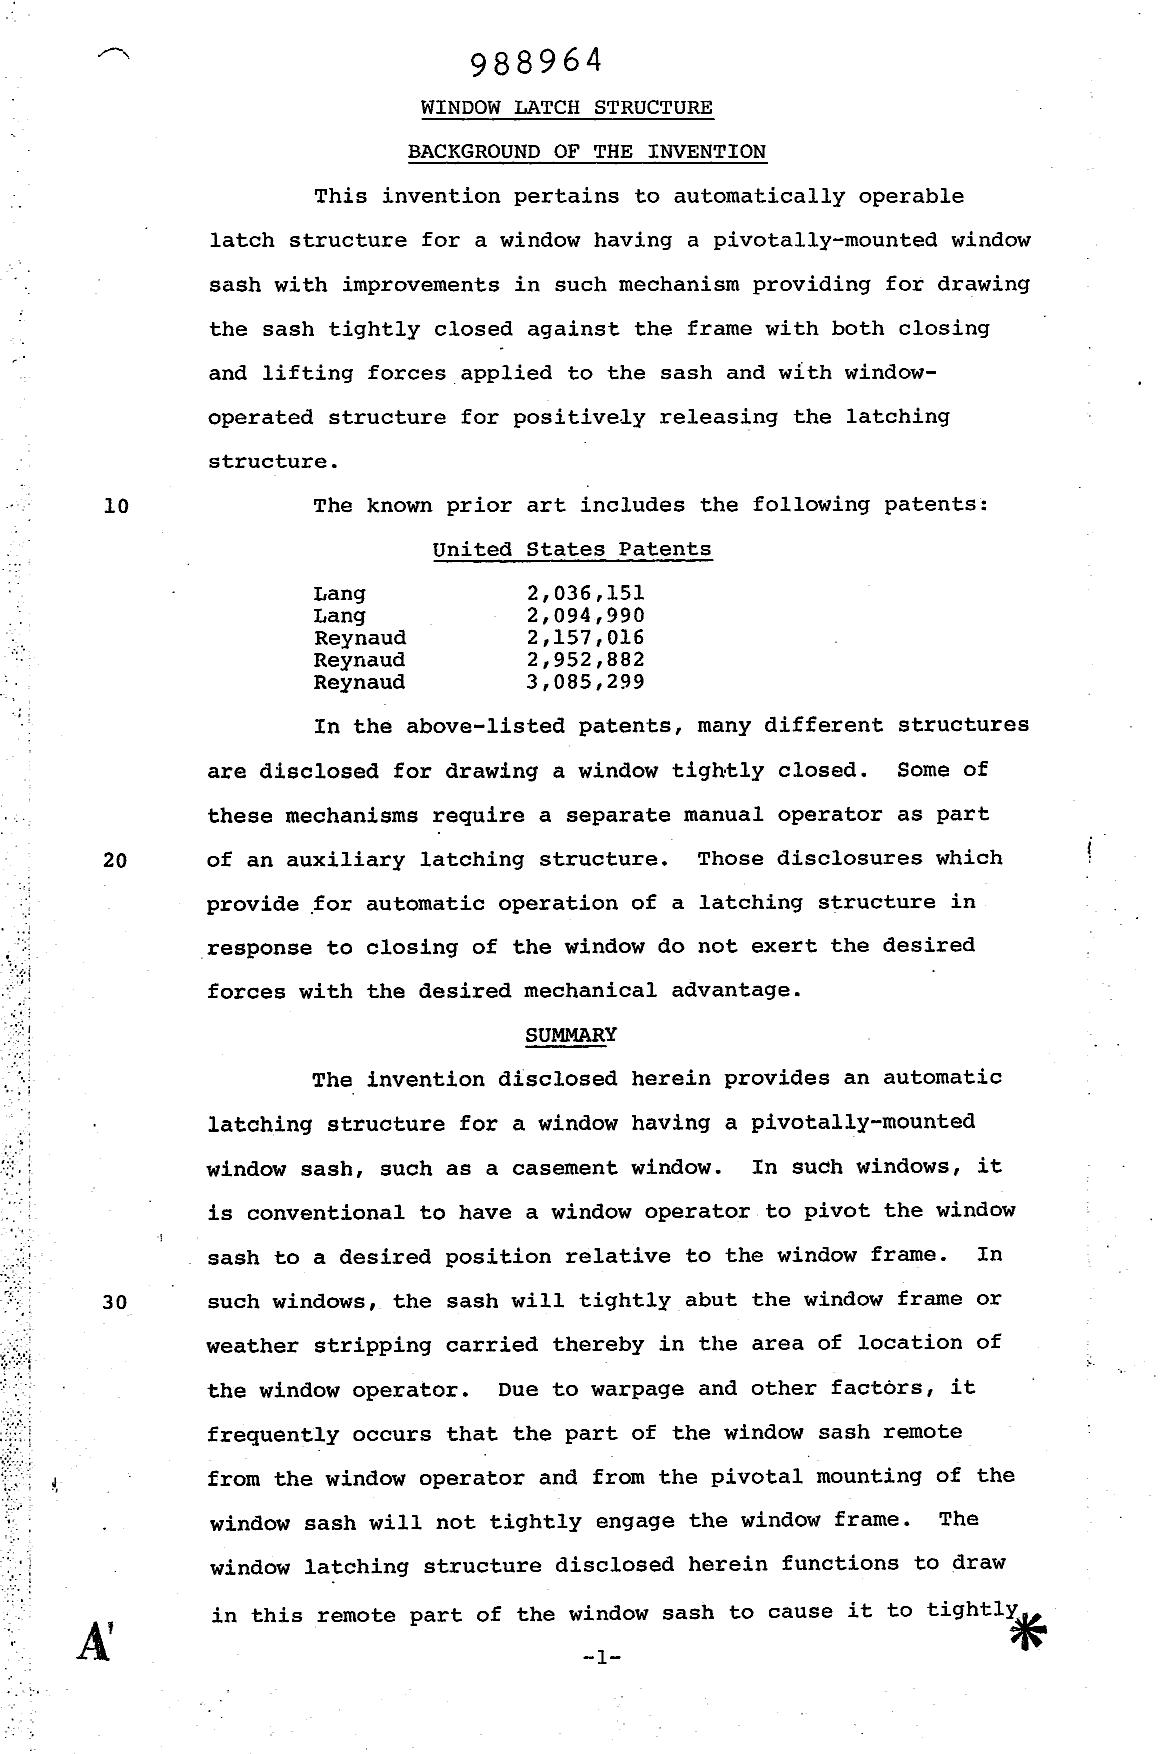 Document de brevet canadien 988964. Description 19940616. Image 1 de 6